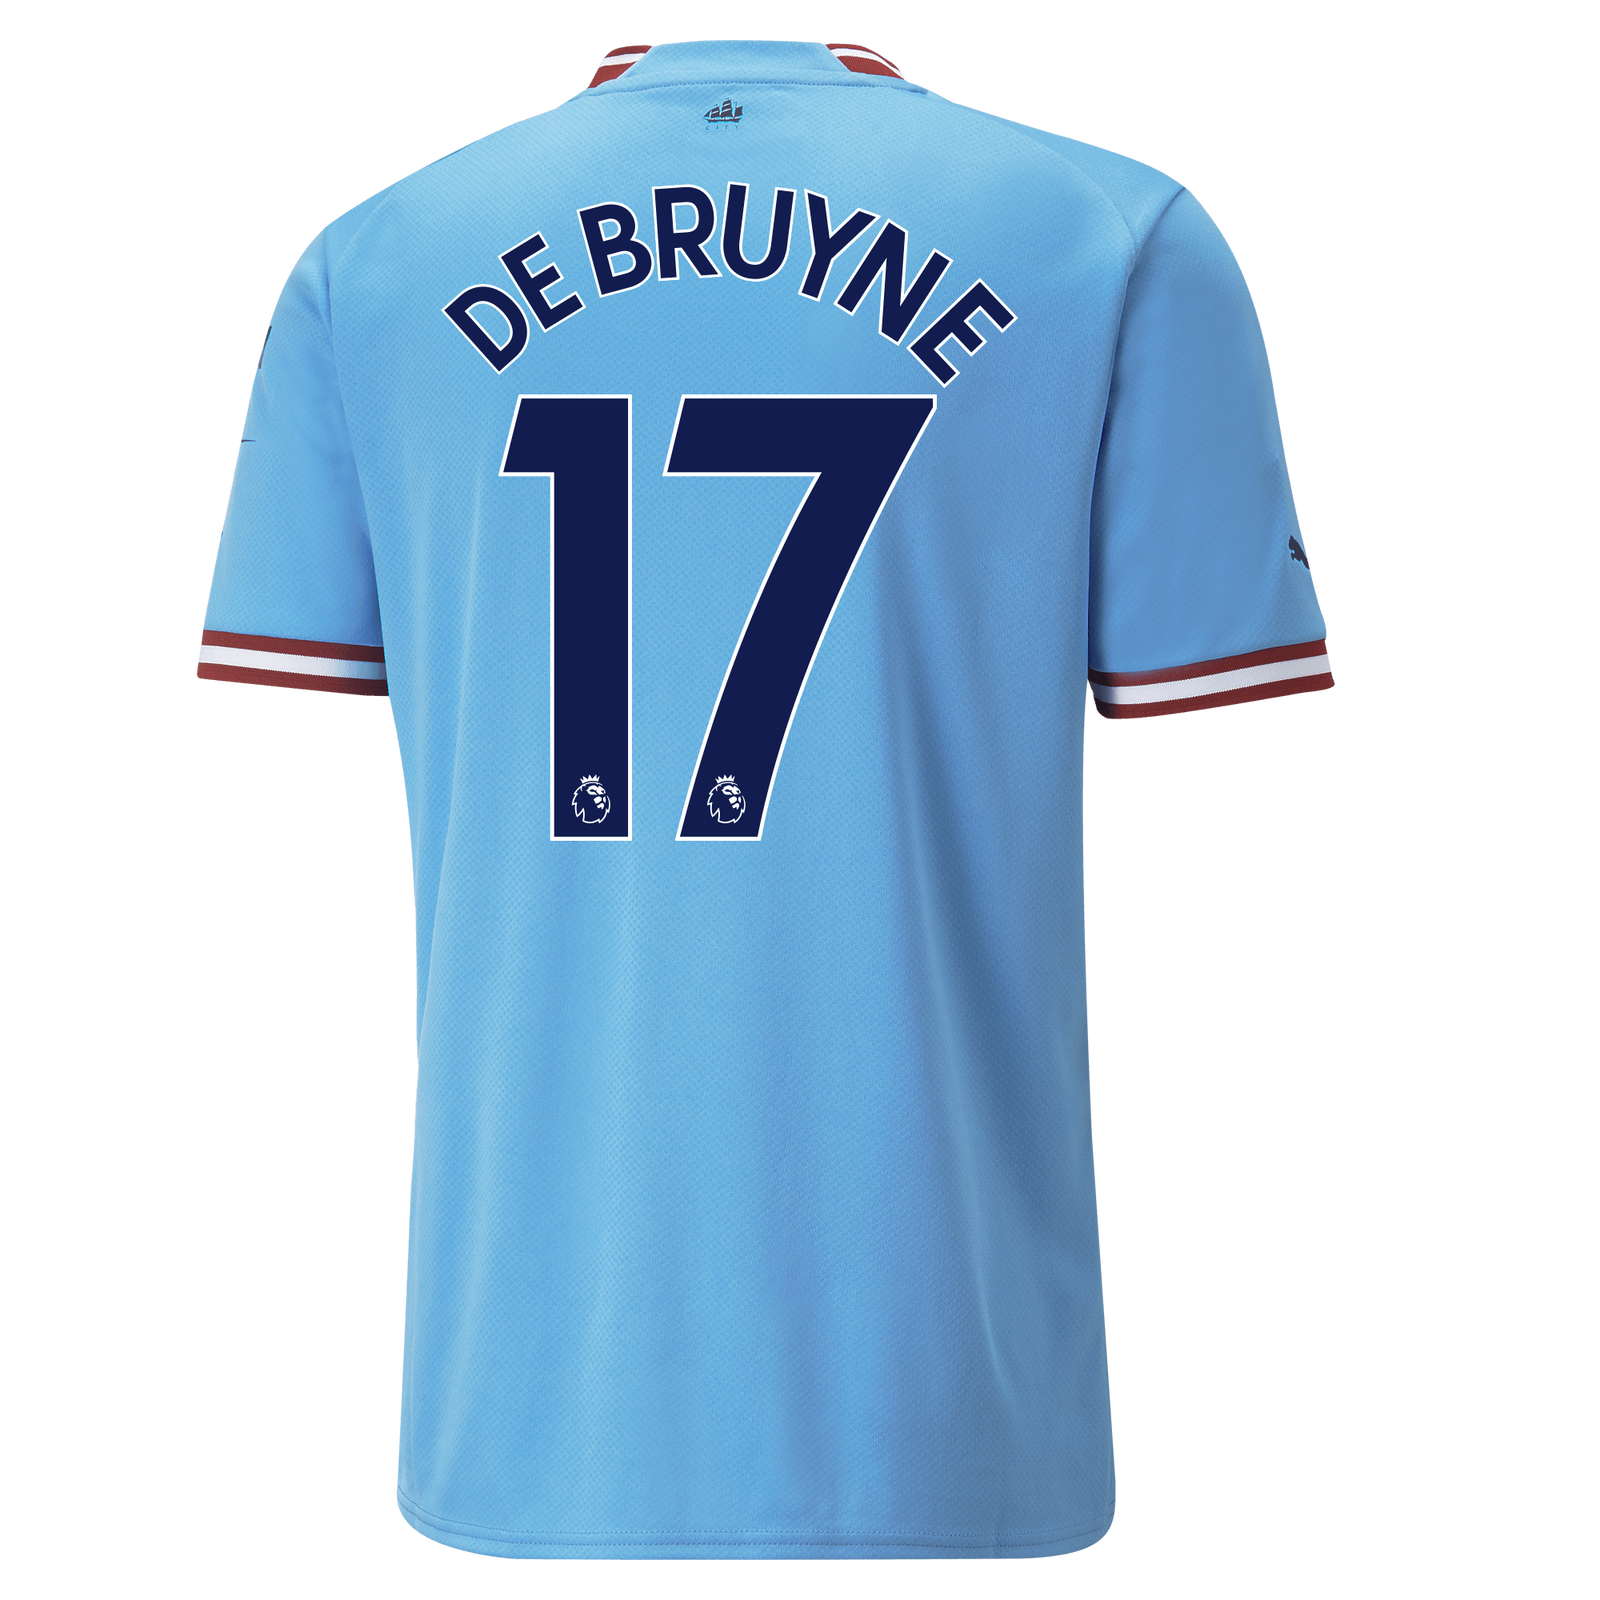 gebonden Emulatie hebben zich vergist Manchester City Home Jersey 22/23 with DE BRUYNE 17 printing | Official Man  City Store